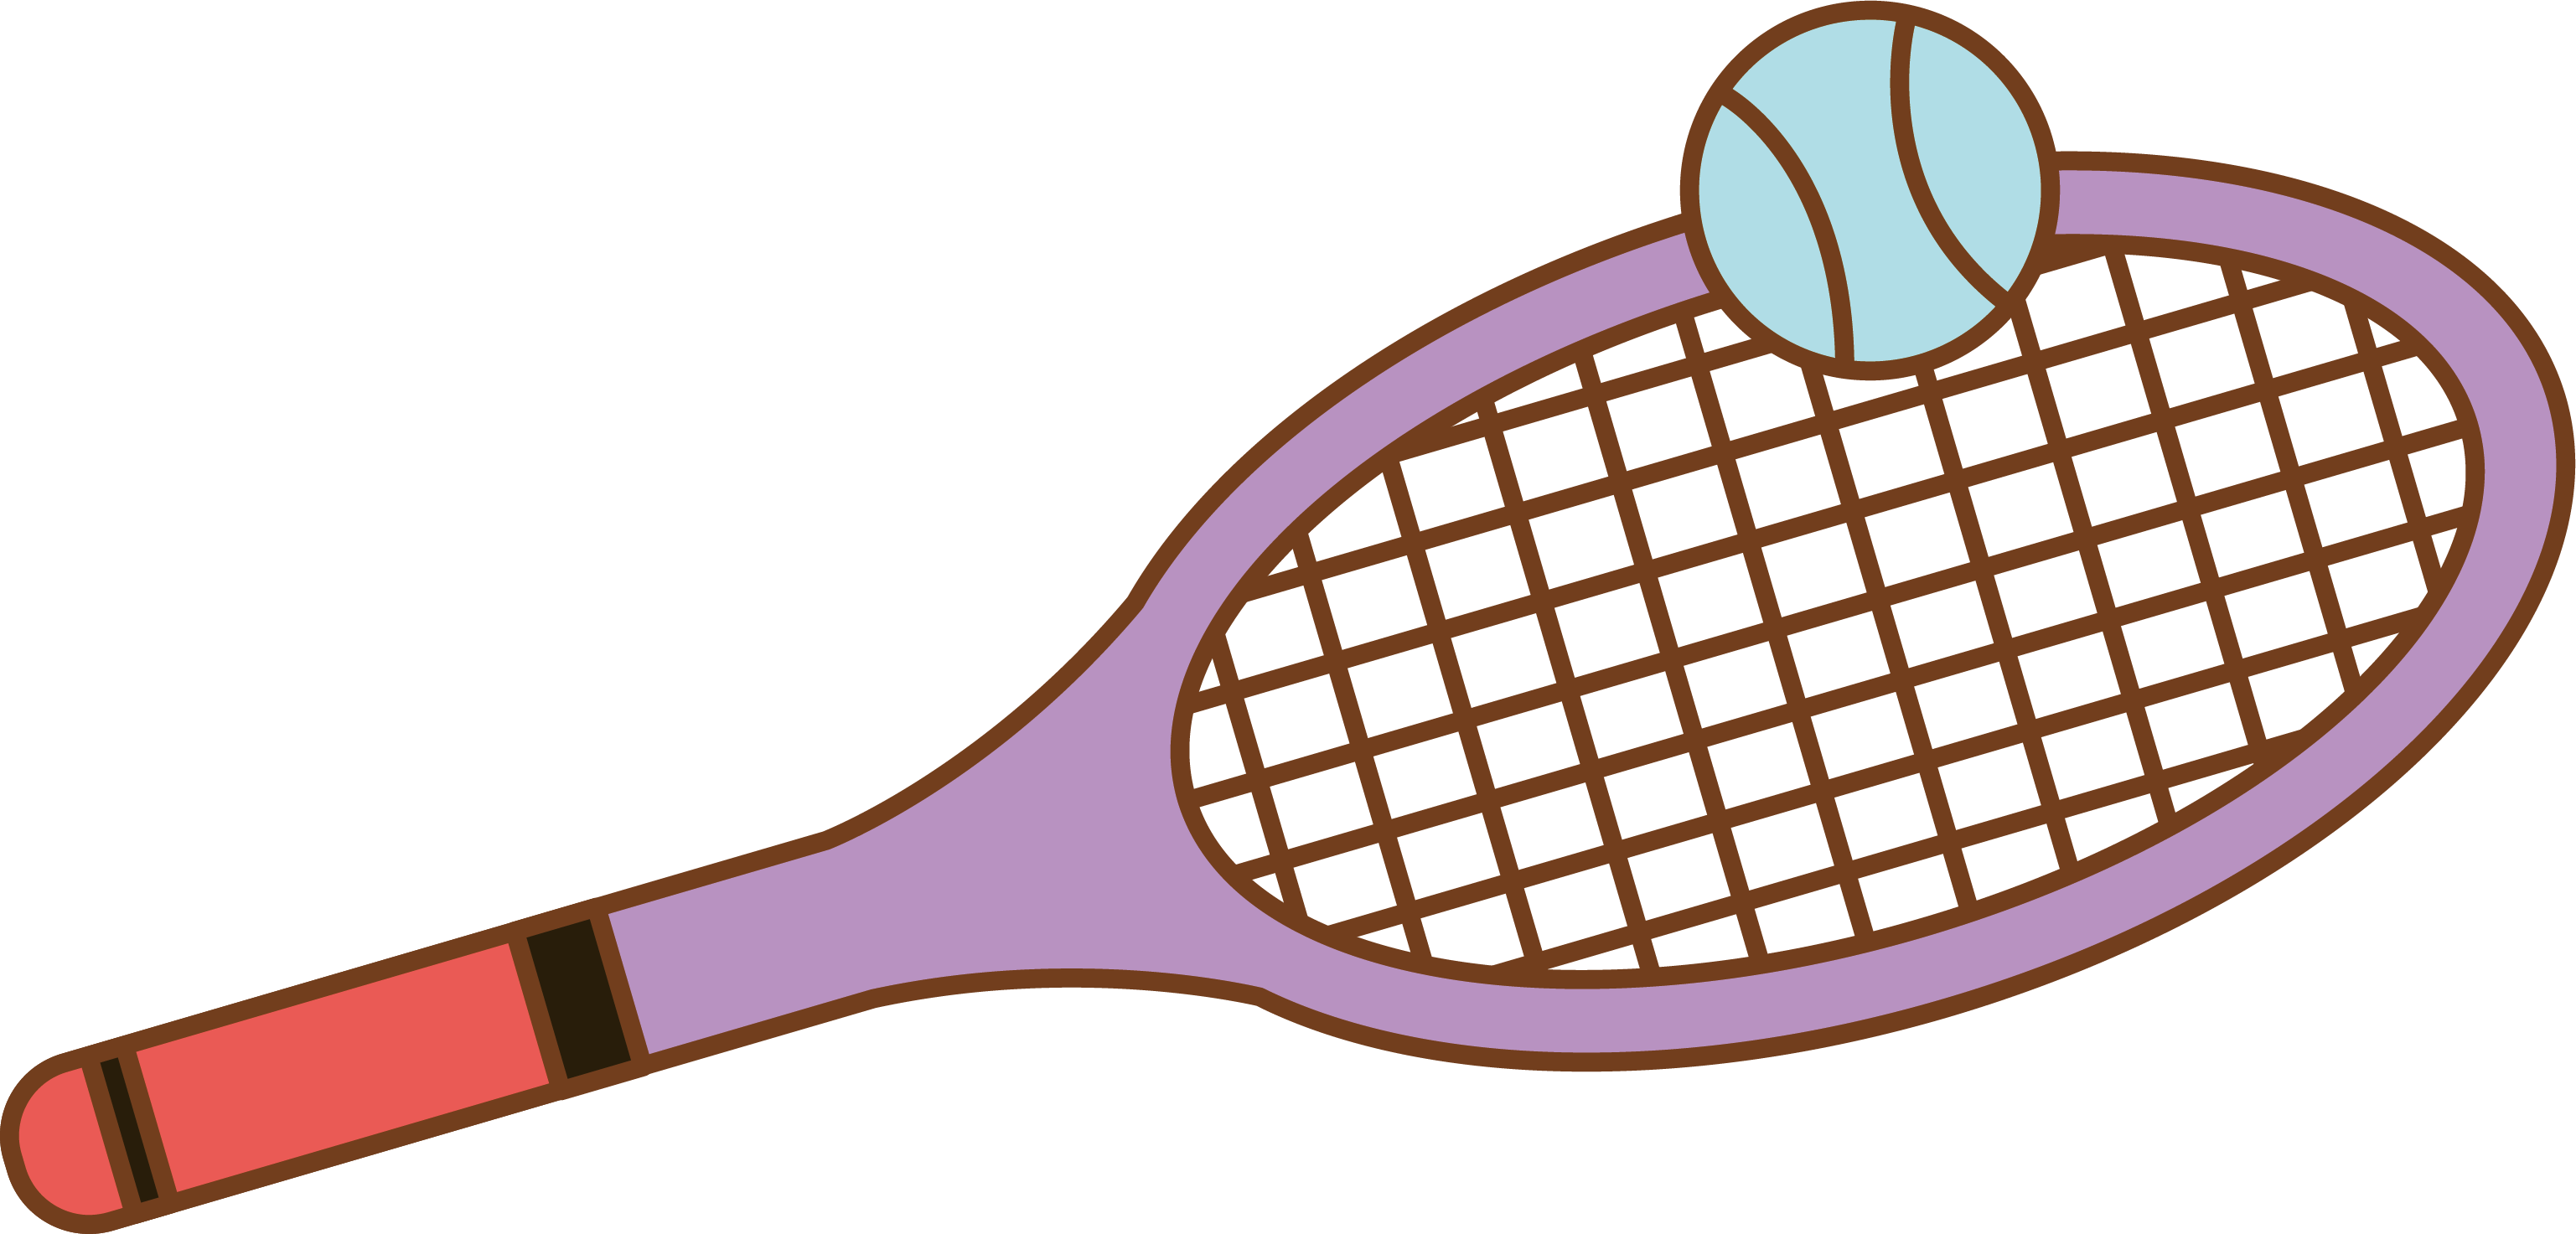 Picture Download Badminton Clipart Sketch - Dibujo De Una Raqueta (3074x1473), Png Download